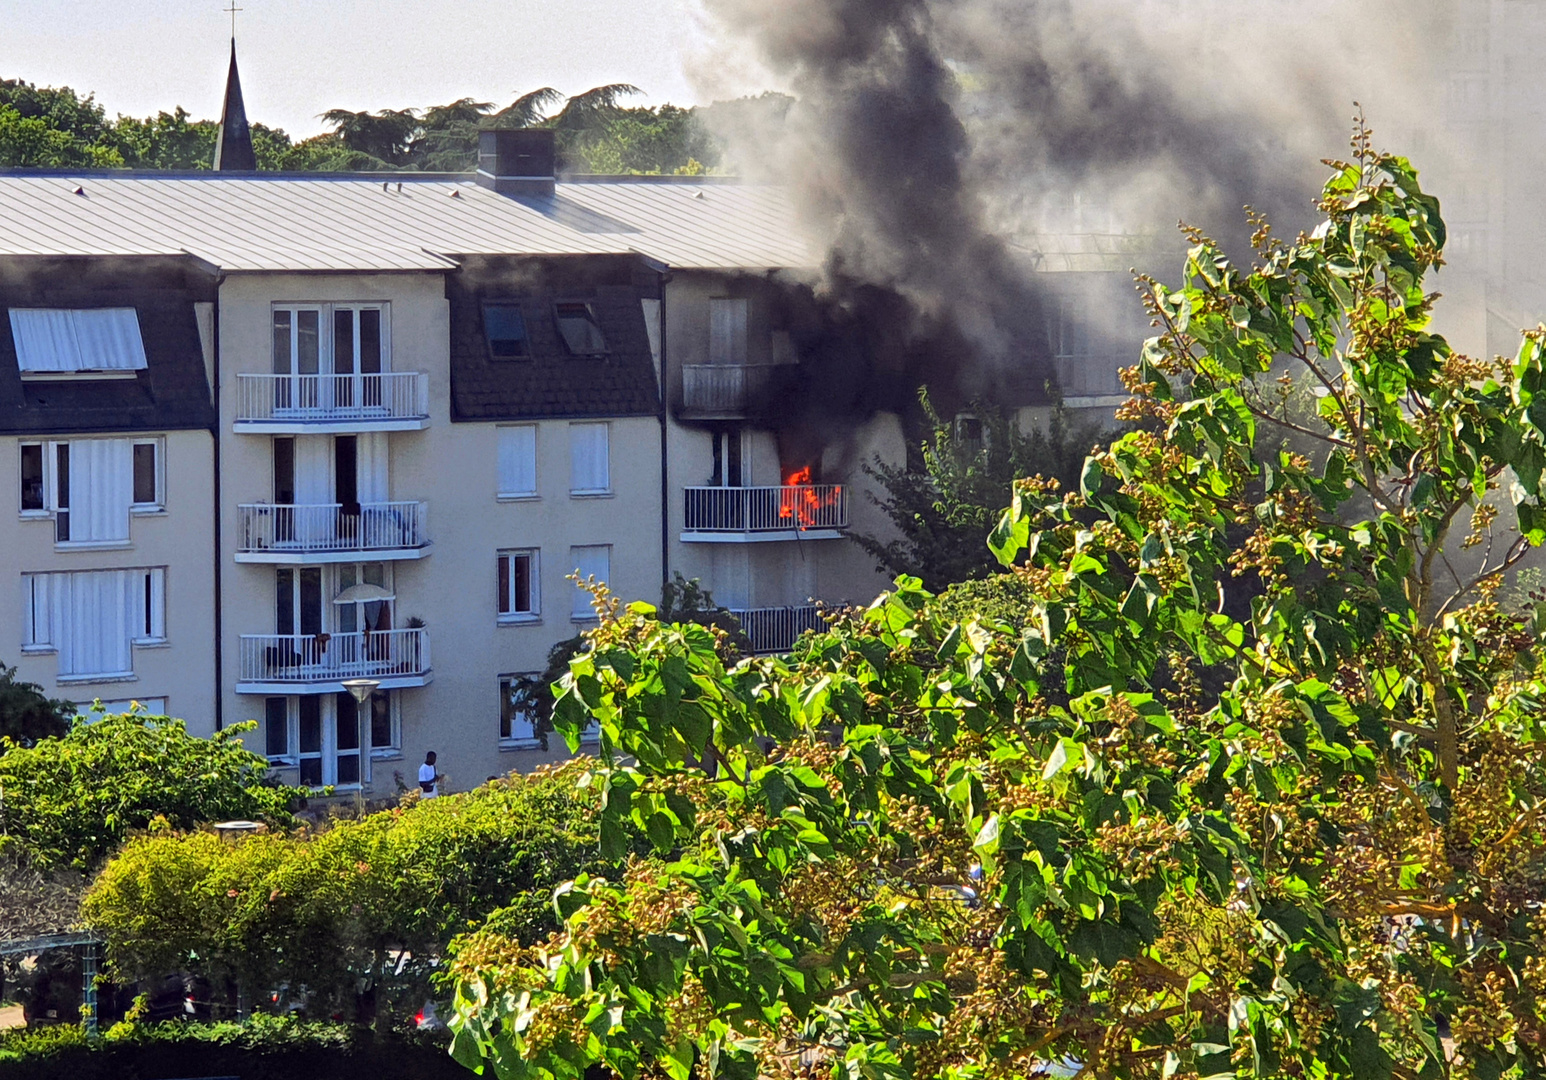 Incendie récent face à ma résidence / banlieue de Rouen